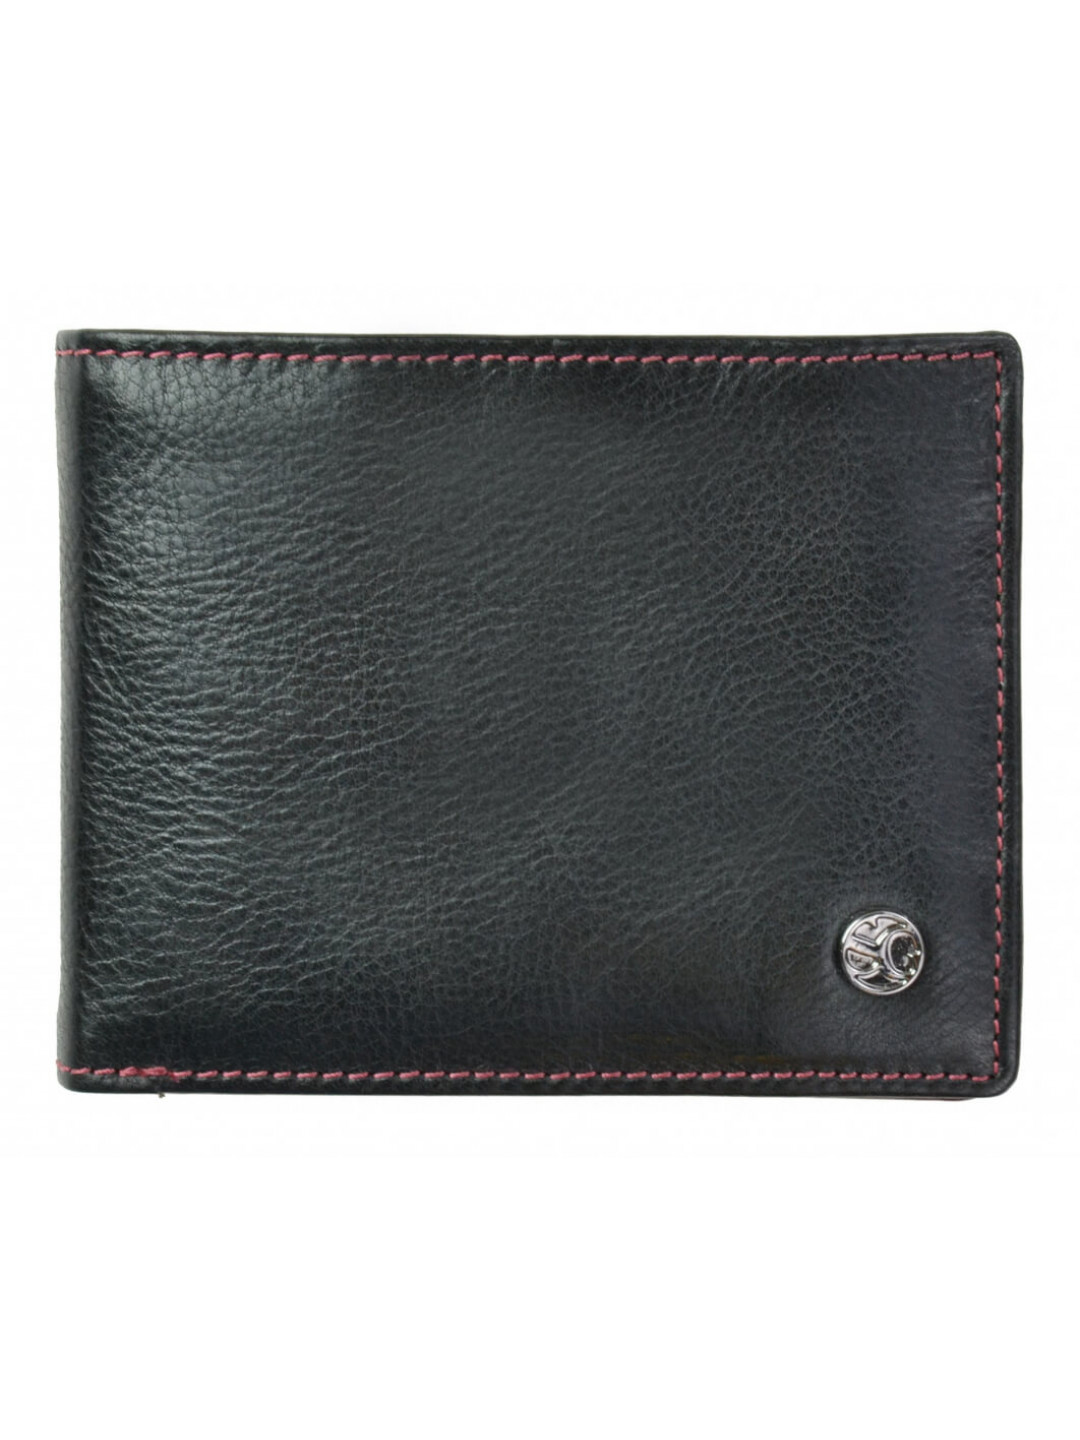 SEGALI Pánská kožená peněženka 907 114 026 black red